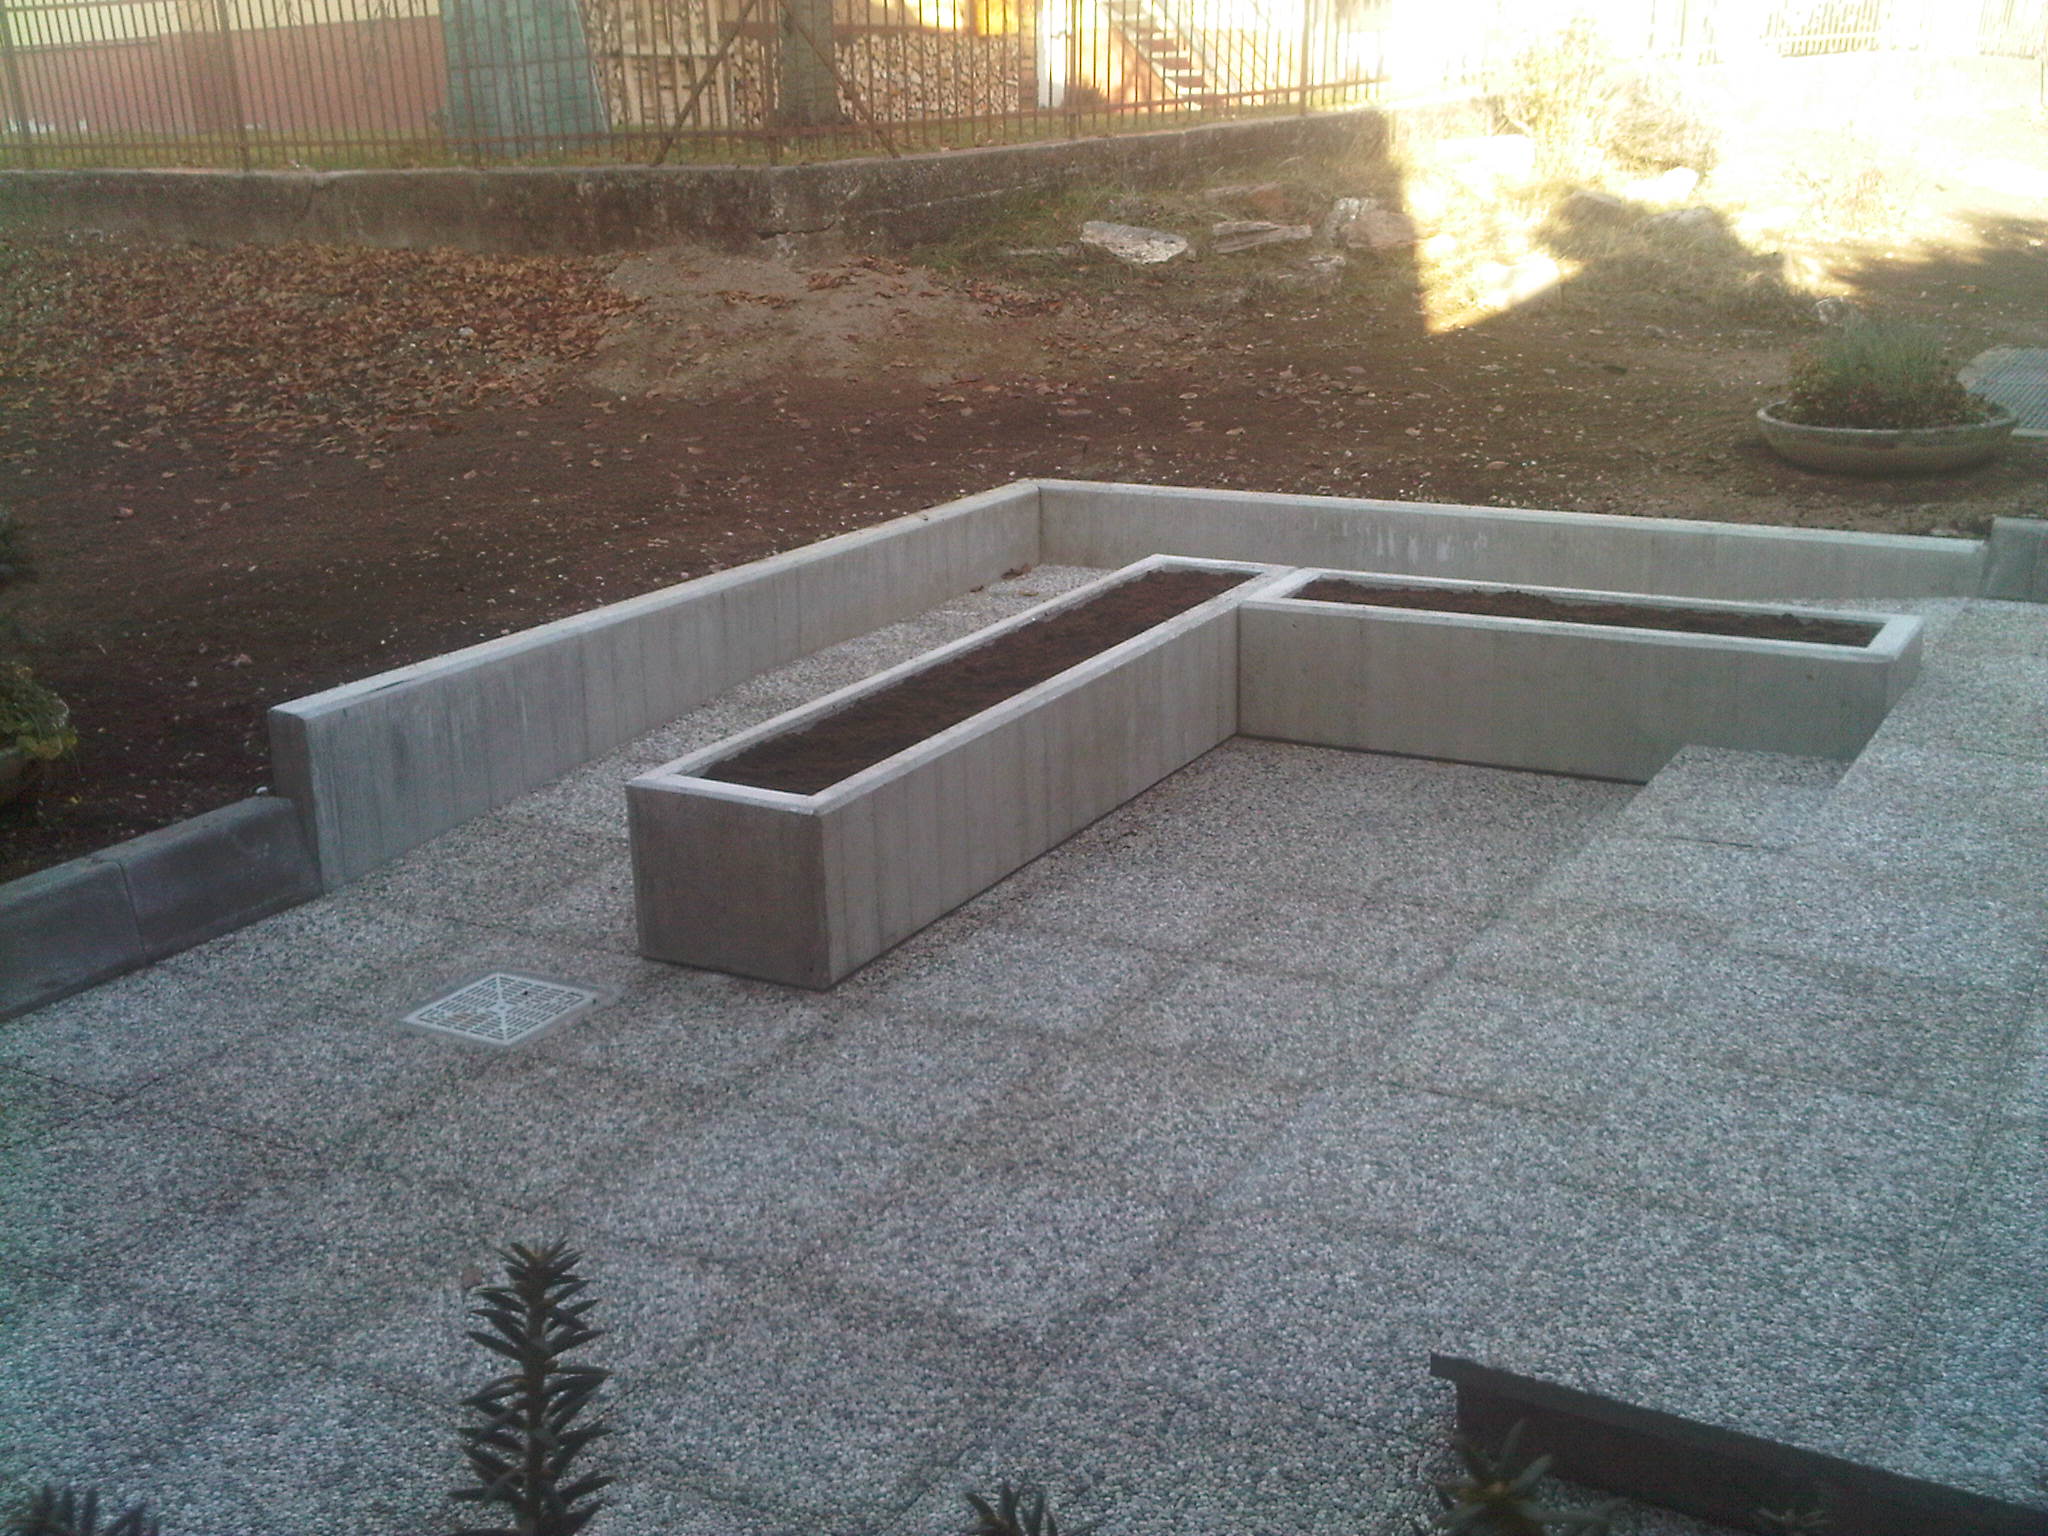 Pavimentazione in pistre posate su cemento e rifacimento dei giardini